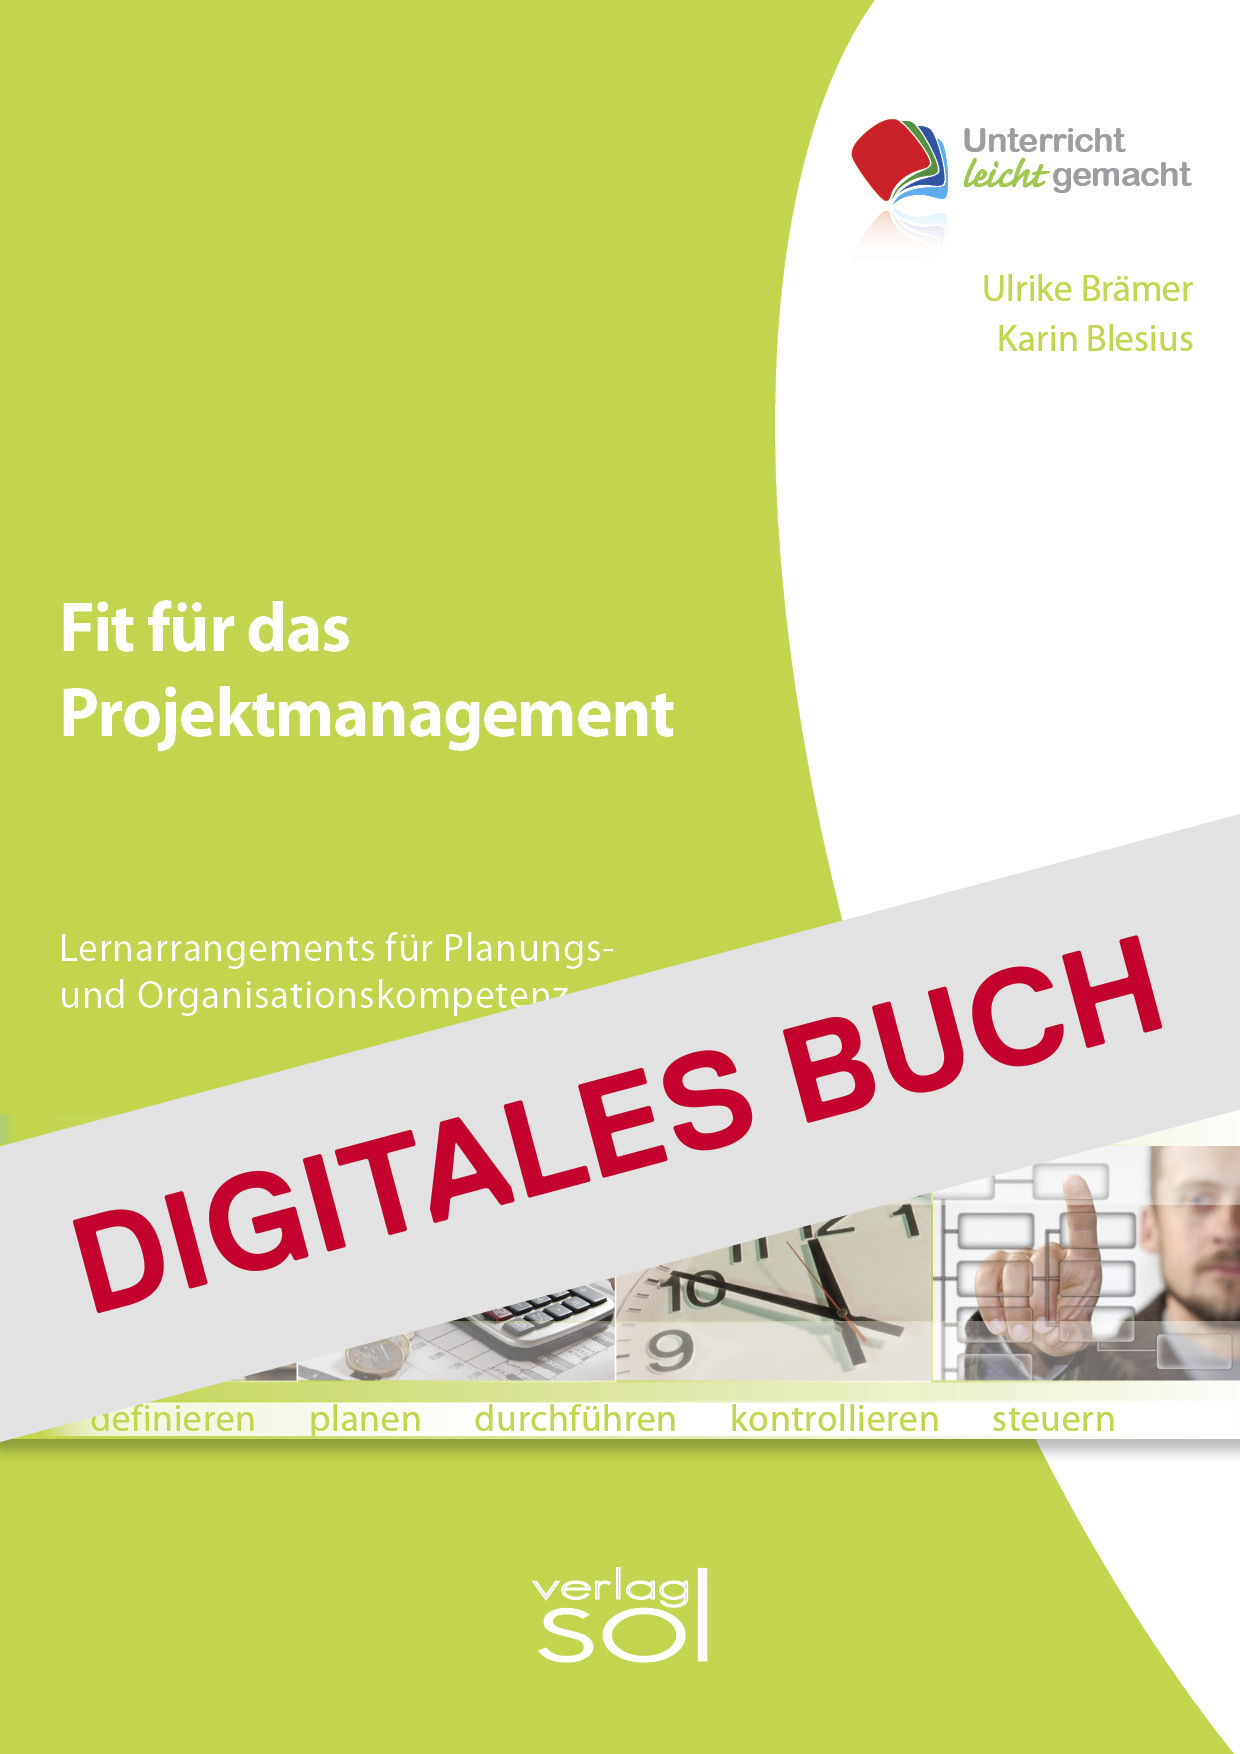 Fit für das Projektmanagement - Digitales Buch